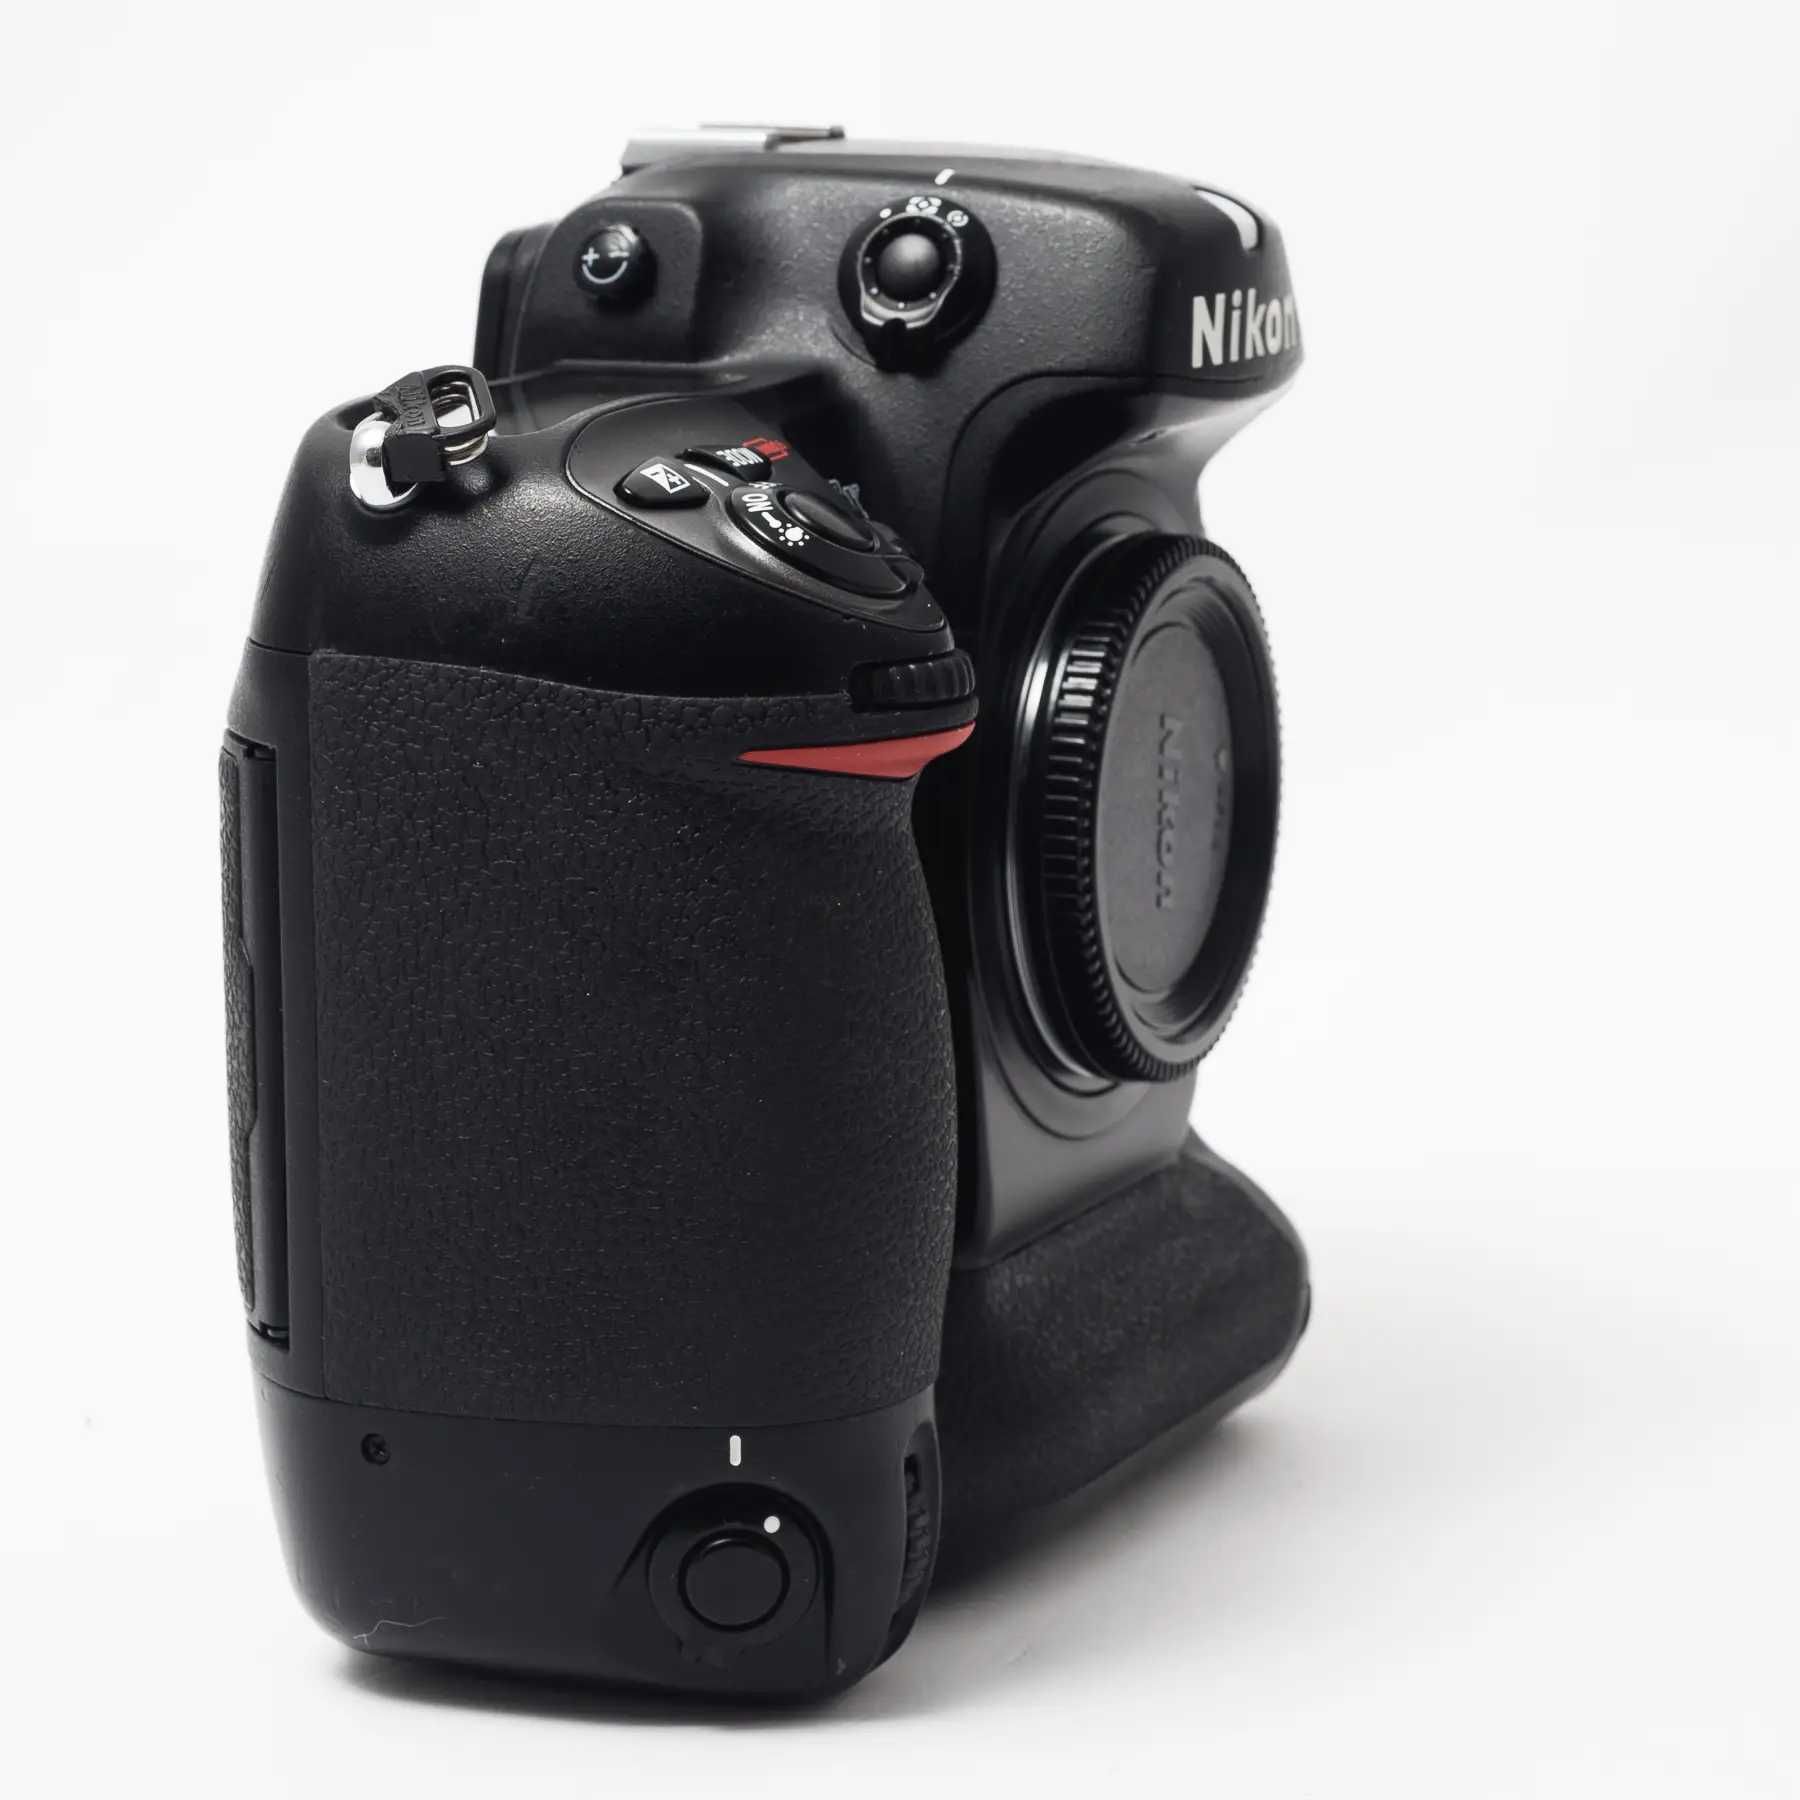 Дзеркальний фотоапарат Nikon D2x (пробіг 13015 кадрів)